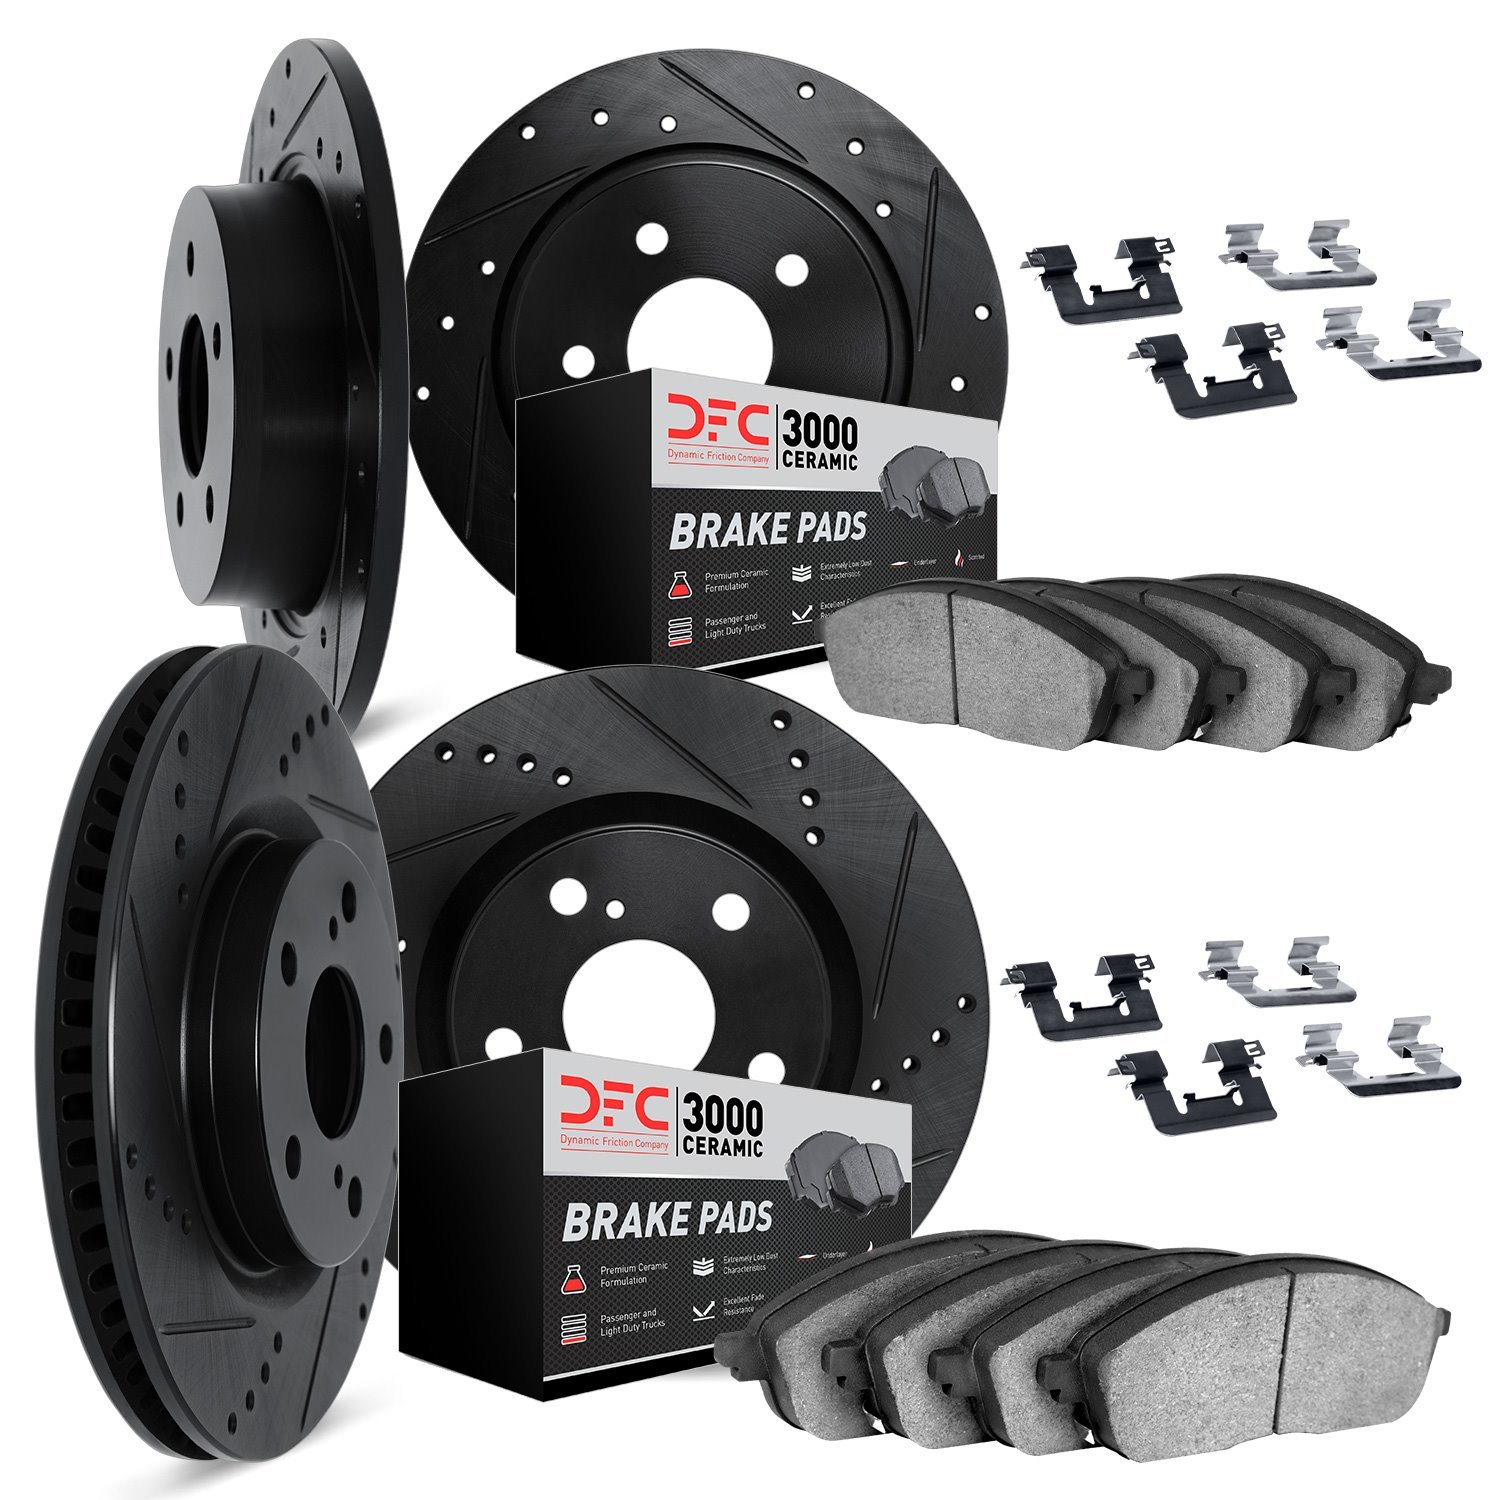 8314-76089 Drilled/Slotted Brake Rotors with 3000-Series Ceramic Brake Pads Kit & Hardware [Black], 2007-2012 Lexus/Toyota/Scion